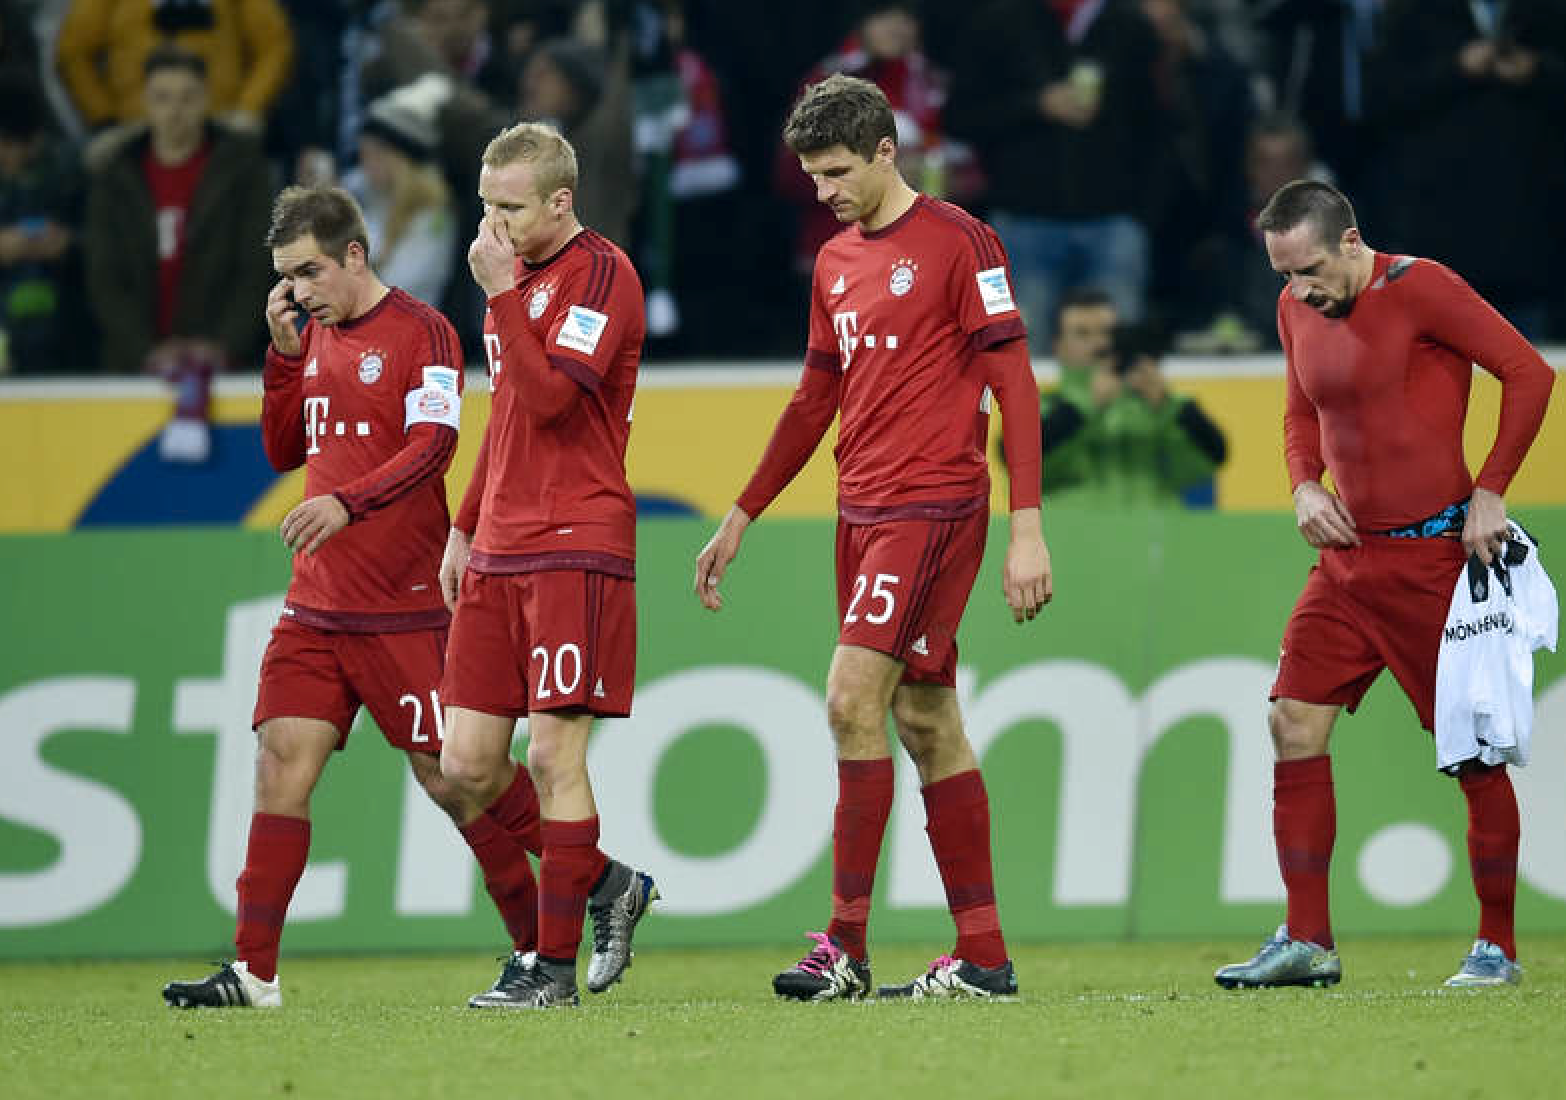 Bayern München är en av få klubbar som backar var gäller intäkter. Foto: AP/Martin Meissner